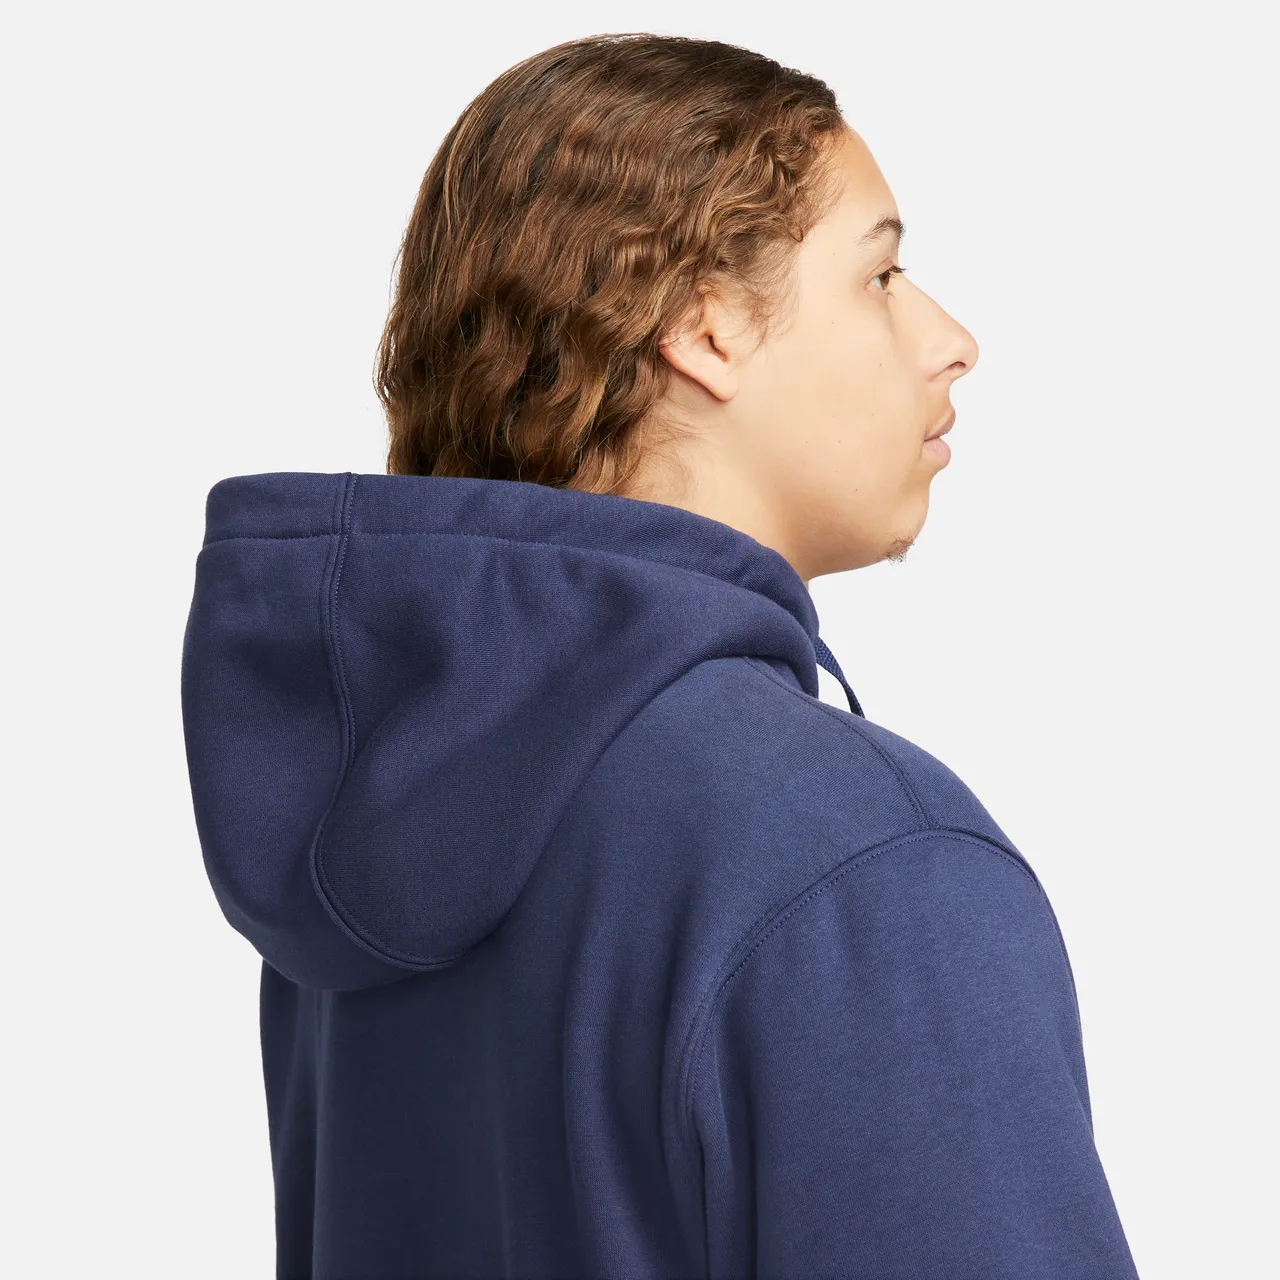 Nike Sportswear Club Fleece Men's Full-Zip Hoodie - Blue - Cotton